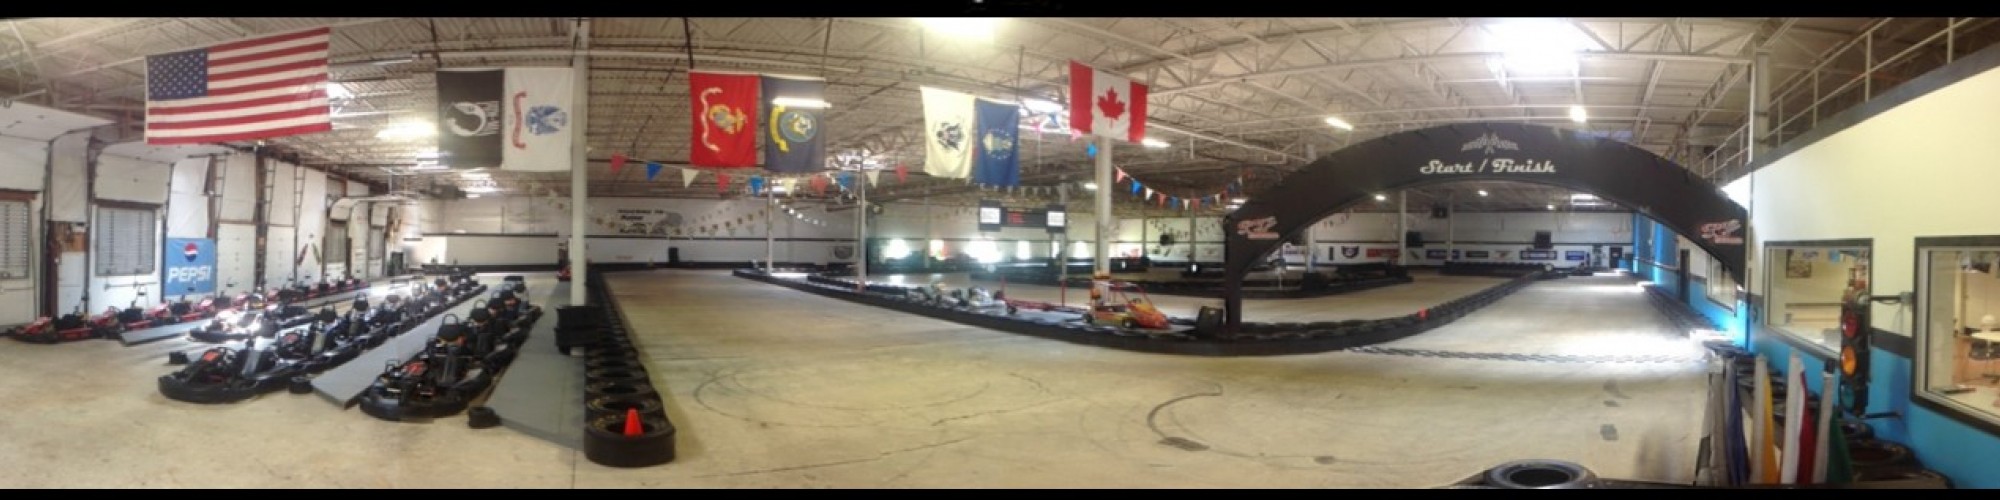 Maine Indoor Karting